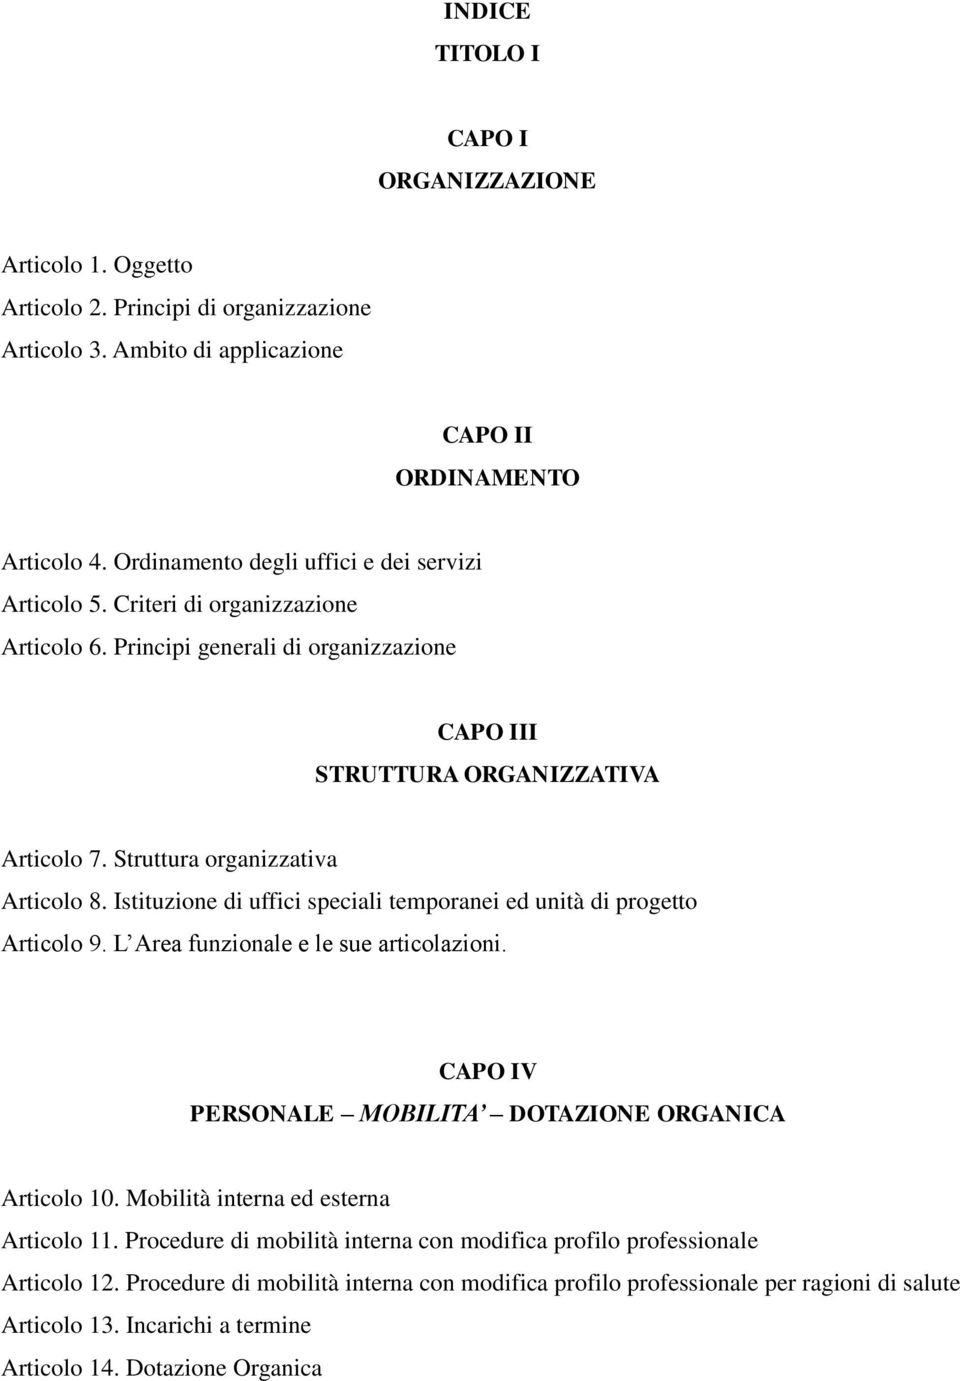 Struttura organizzativa Articolo 8. Istituzione di uffici speciali temporanei ed unità di progetto Articolo 9. L Area funzionale e le sue articolazioni.